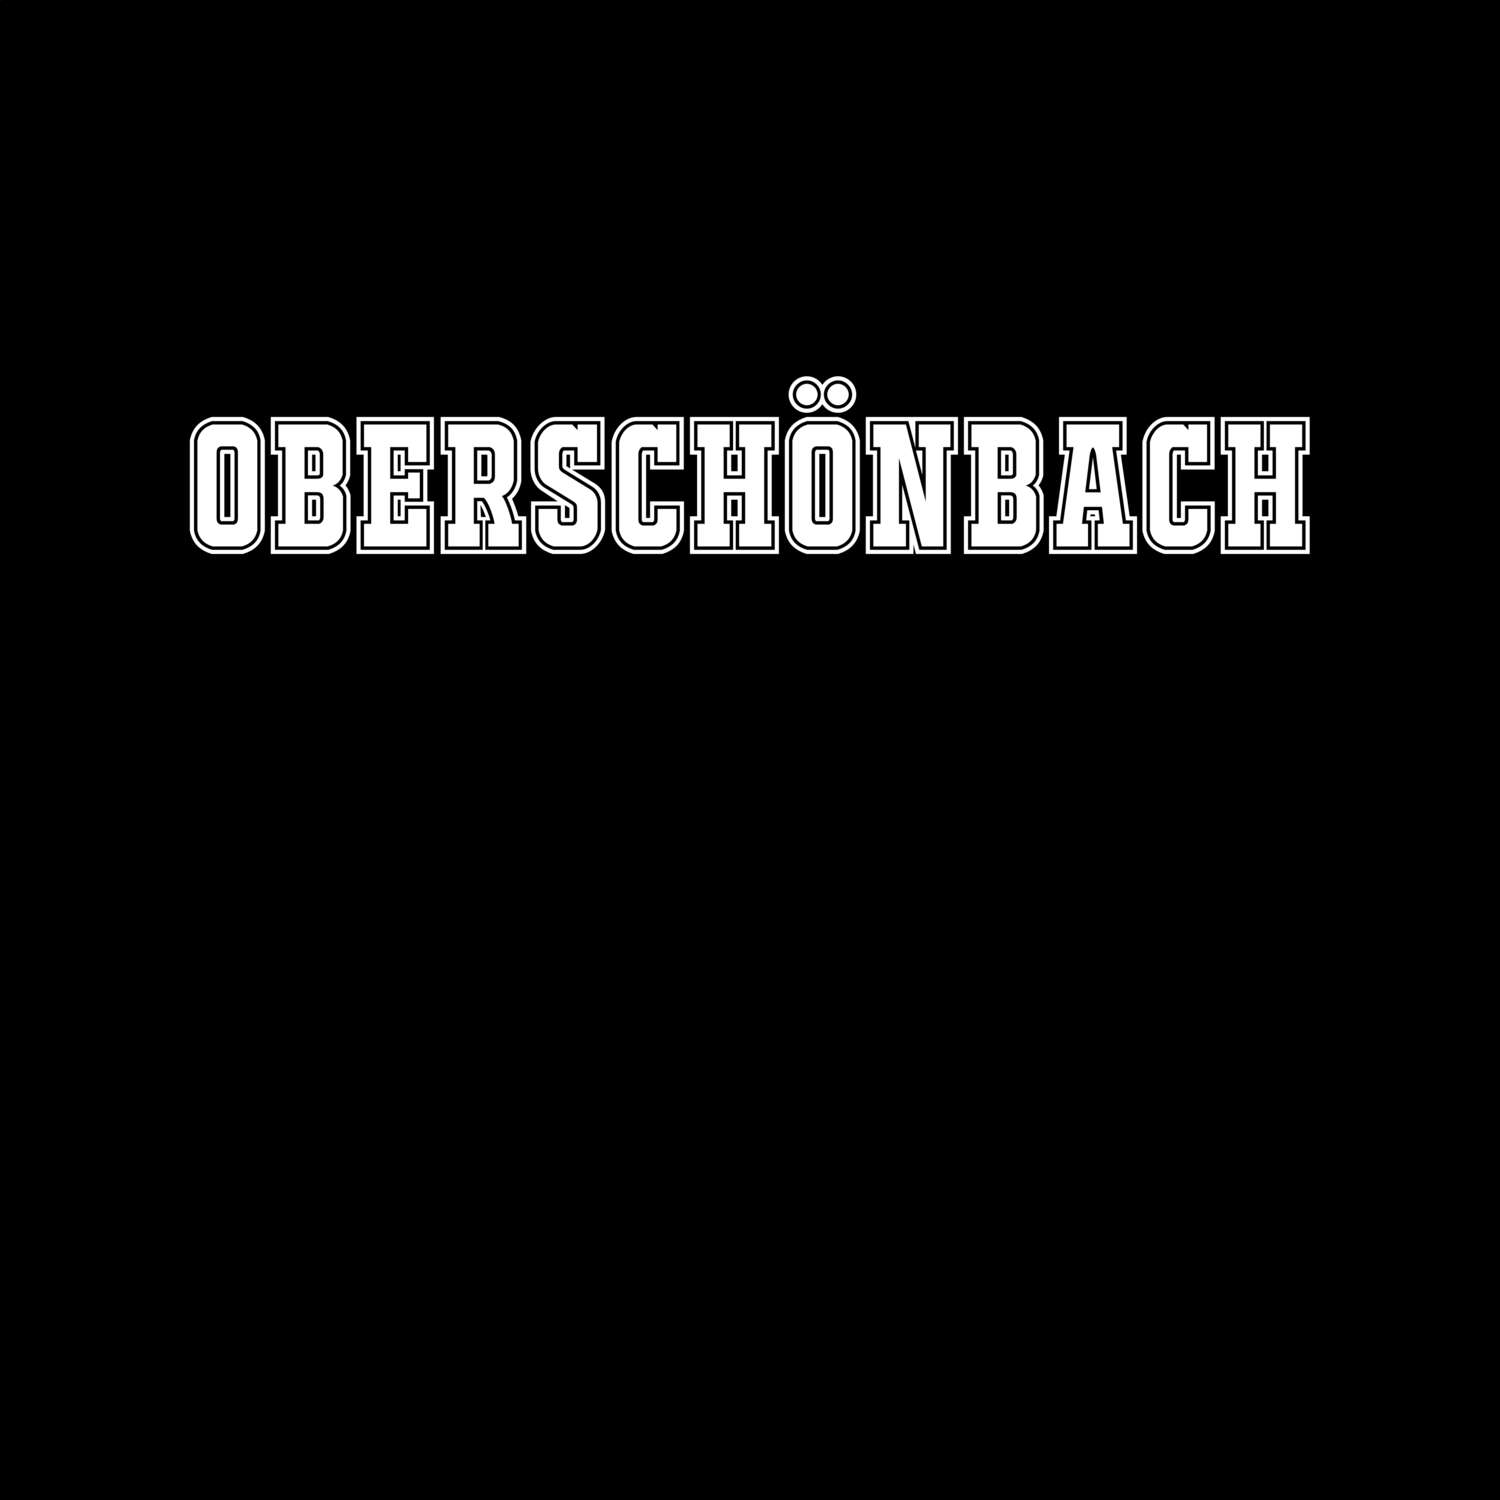 Oberschönbach T-Shirt »Classic«